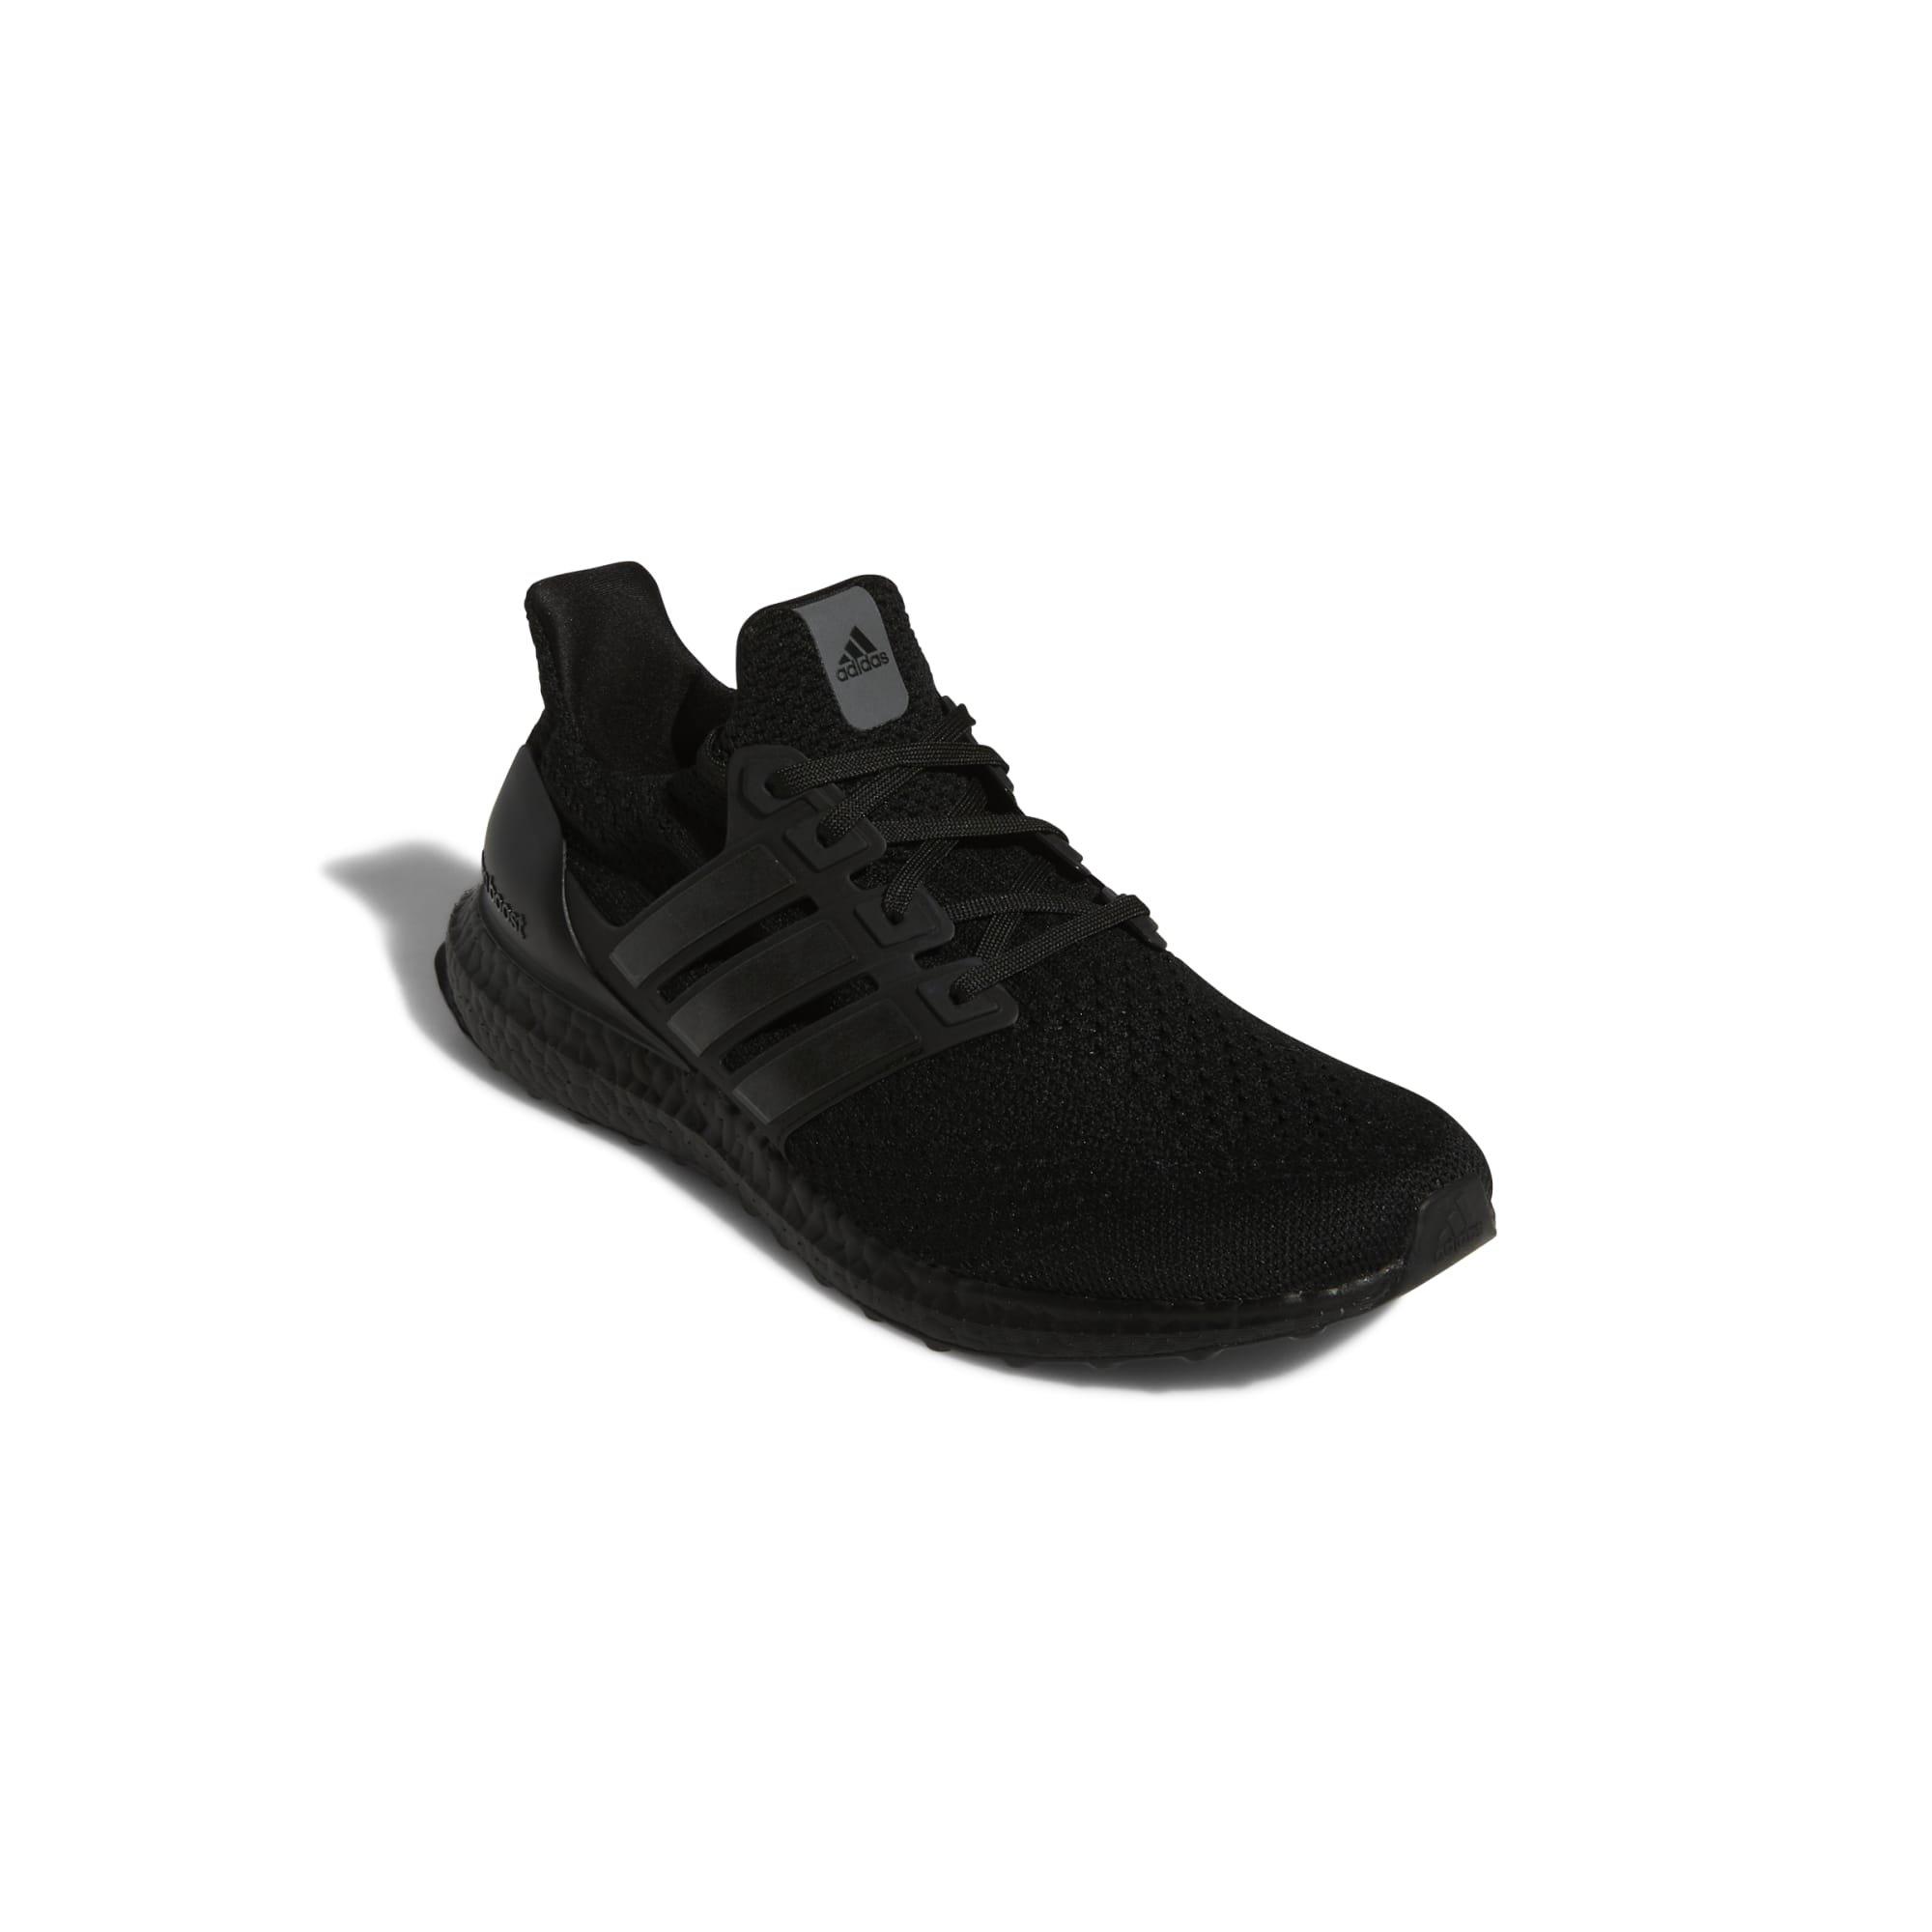 Goma de dinero Arruinado Inclinarse adidas Ultraboost 5.0 DNA "Black/Black" Men's Running Shoe